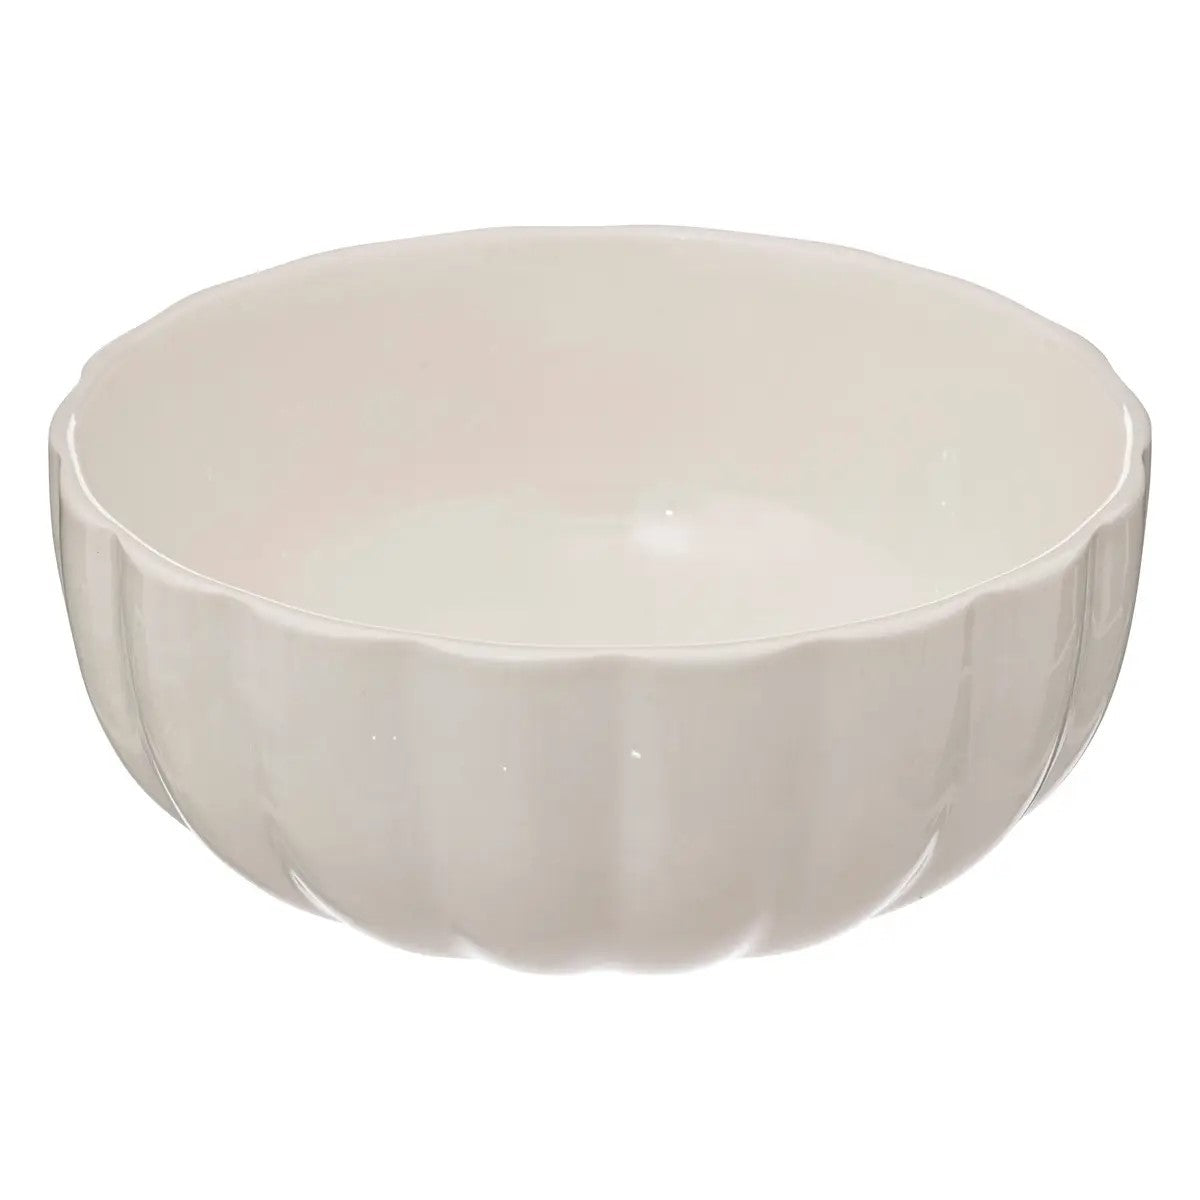 Bowl Redondo (Blanco) Pequeño De Porcelana